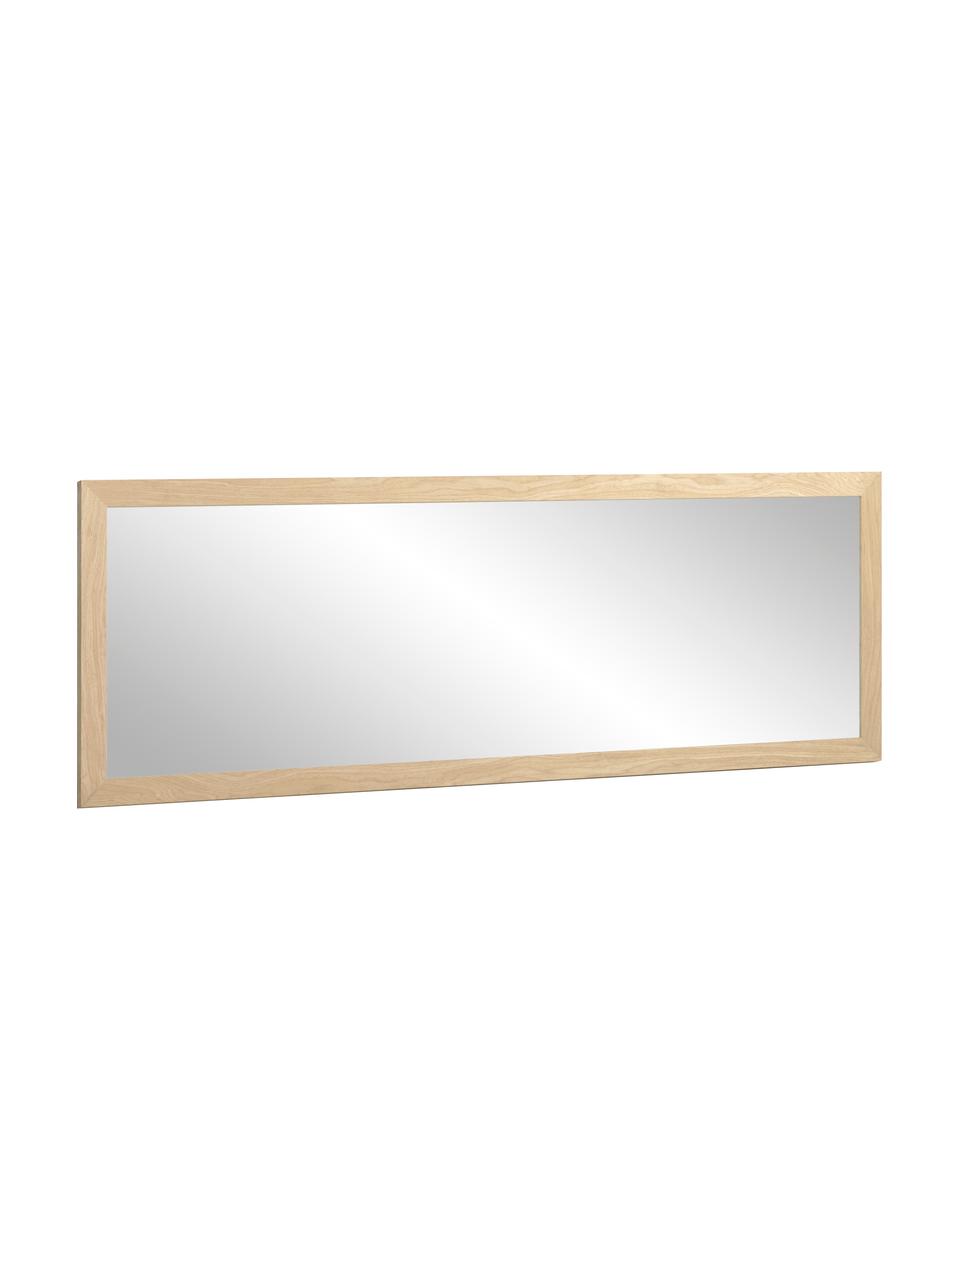 Specchio rettangolare da parete con cornice in legno marrone chiaro Wilany, Cornice: legno, Superficie dello specchio: lastra di vetro, Beige, Larg. 53 x Alt. 153 cm